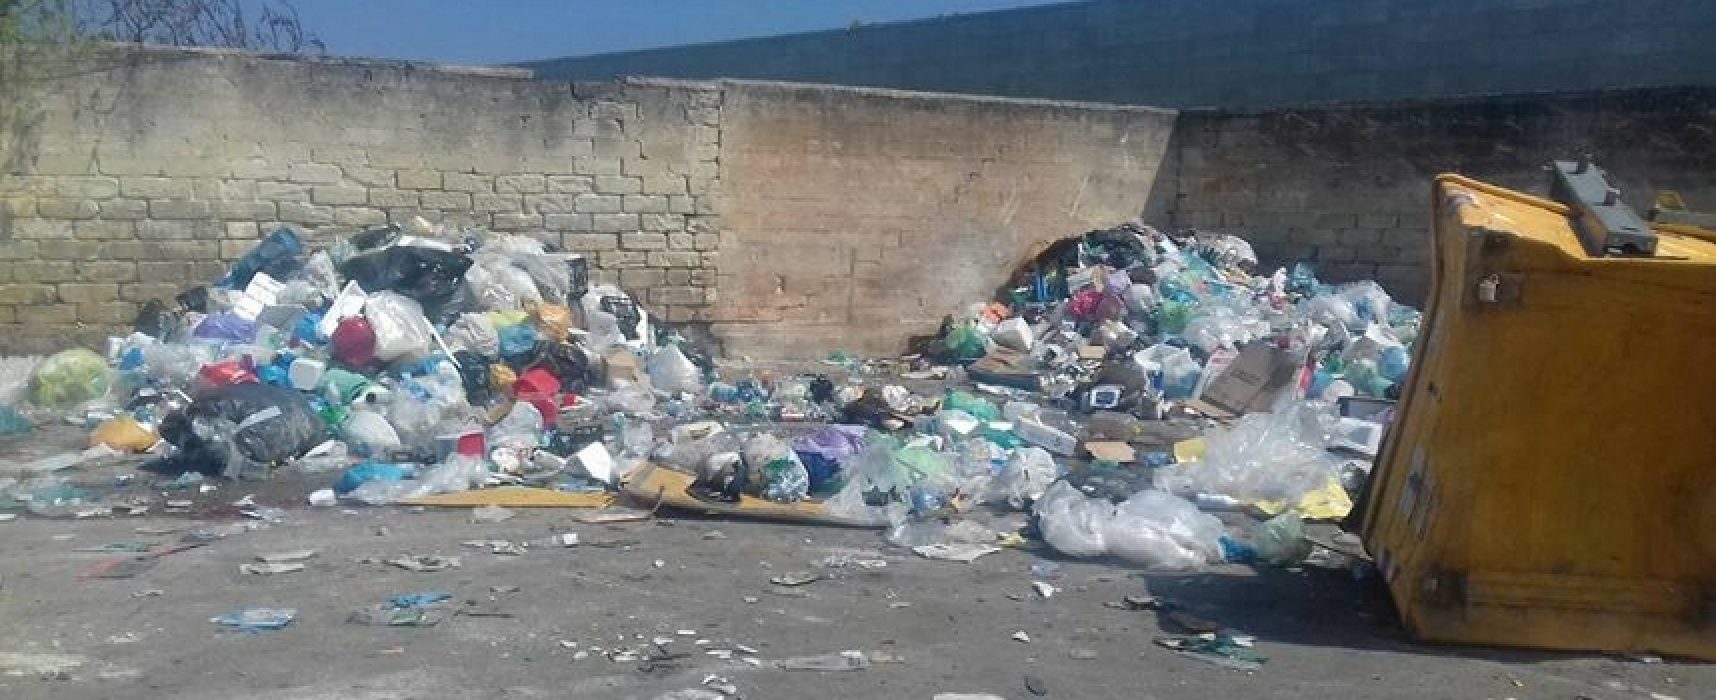 Questione rifiuti, Casella: “Problemi di natura sanitaria gravissimi” / FOTO